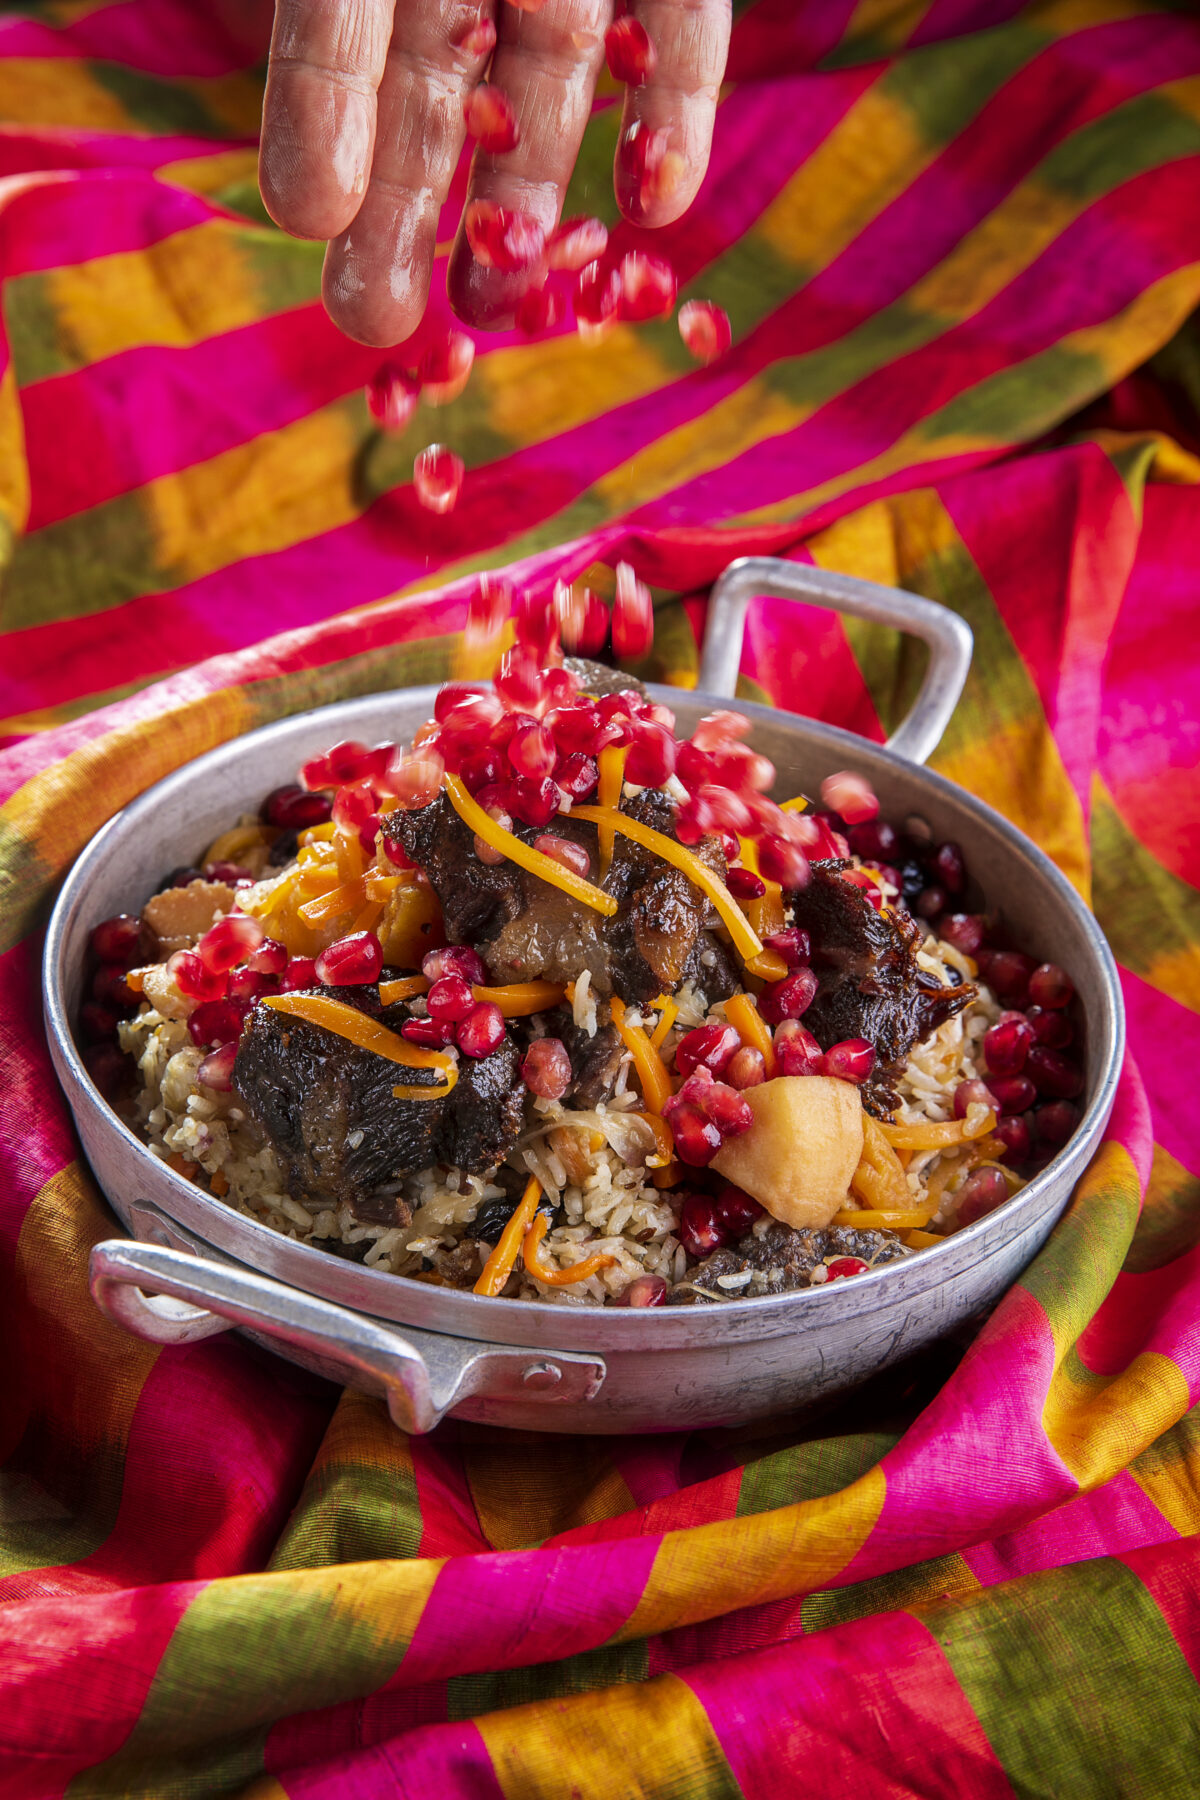 אושפלואו: תבשיל בוכרי חגיגי של אורז ובשר